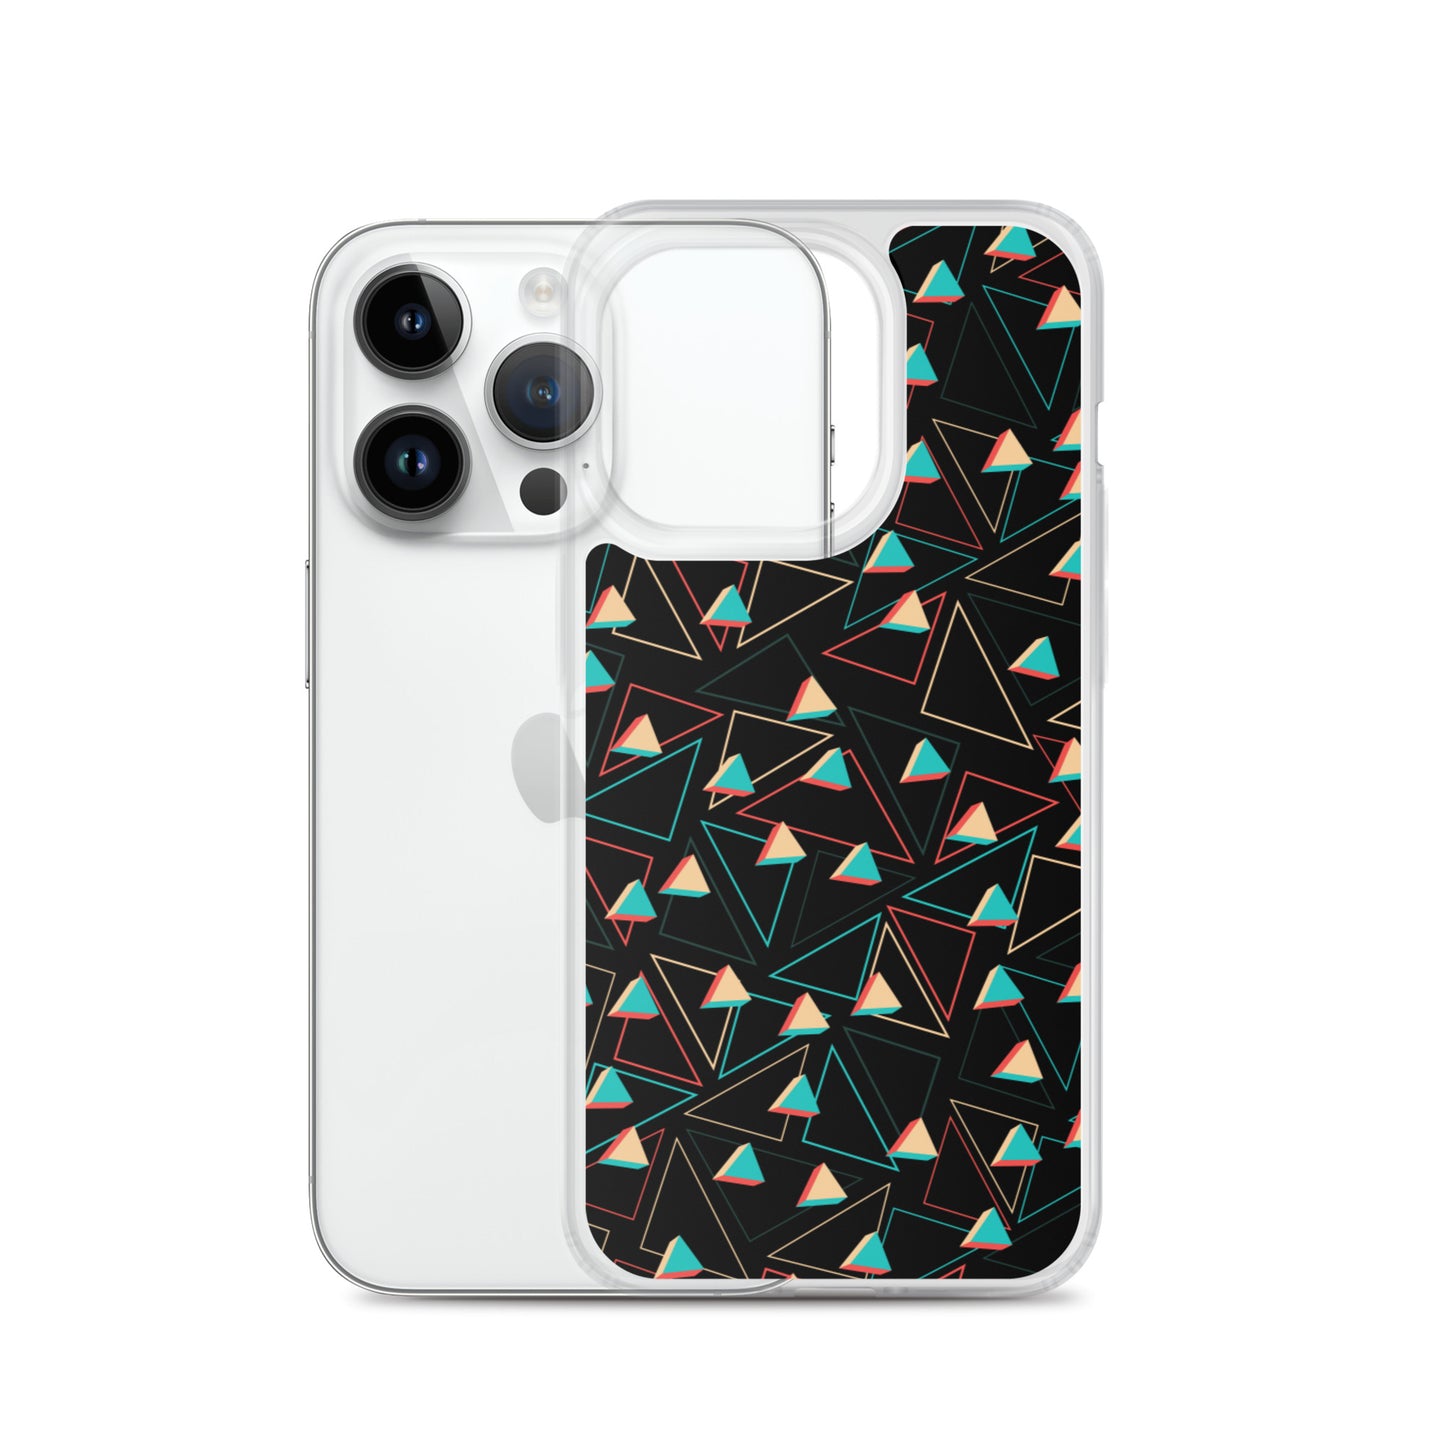 Triangulaire Confit Noir Coque et skin adhésive iPhone